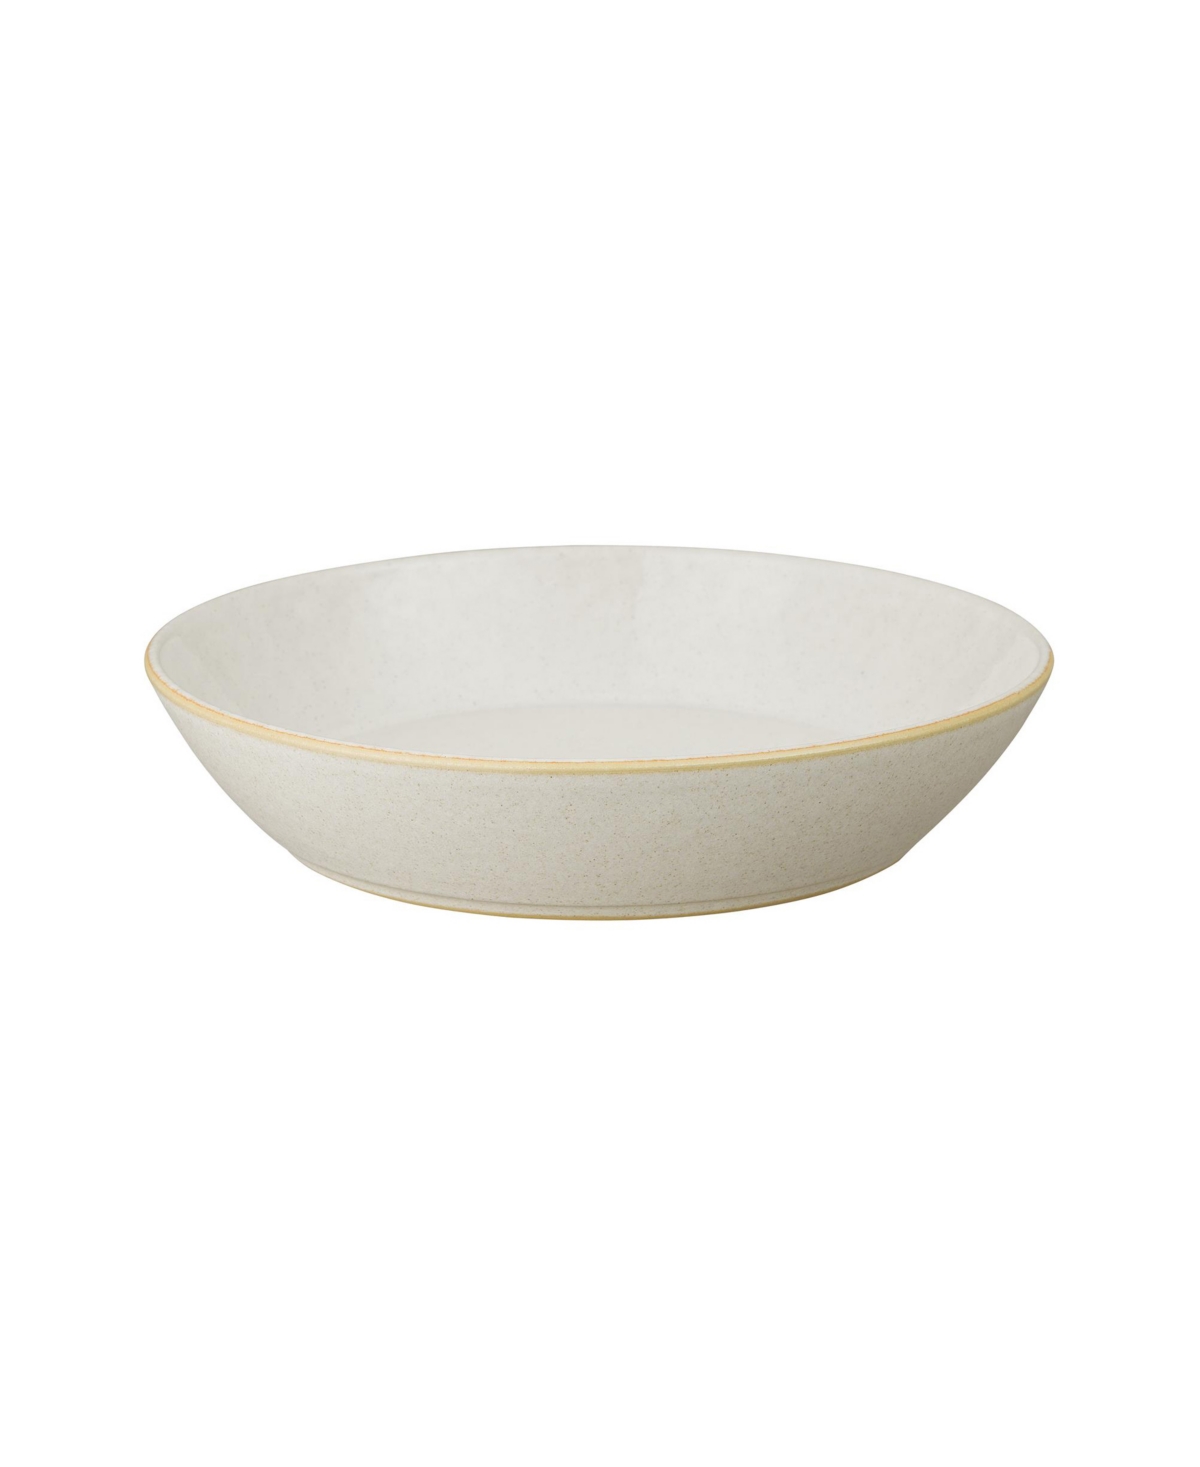 Impression Pasta Bowl - Cream